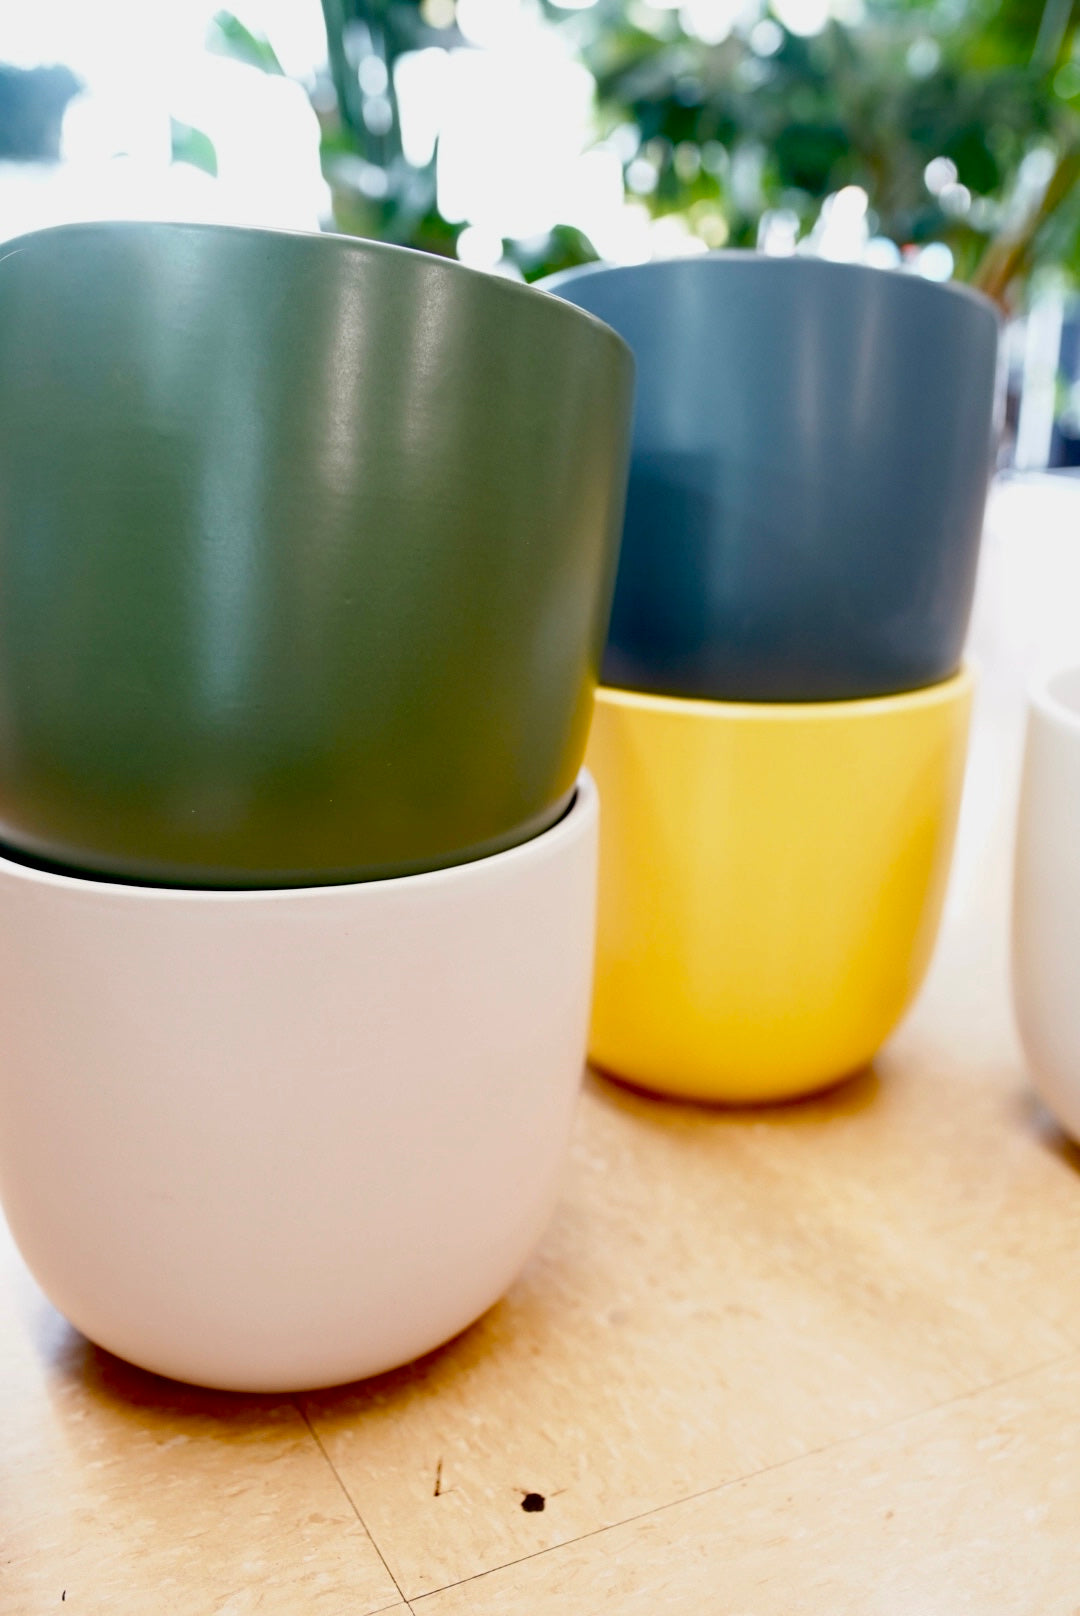 10” Ceramic Egg Planter